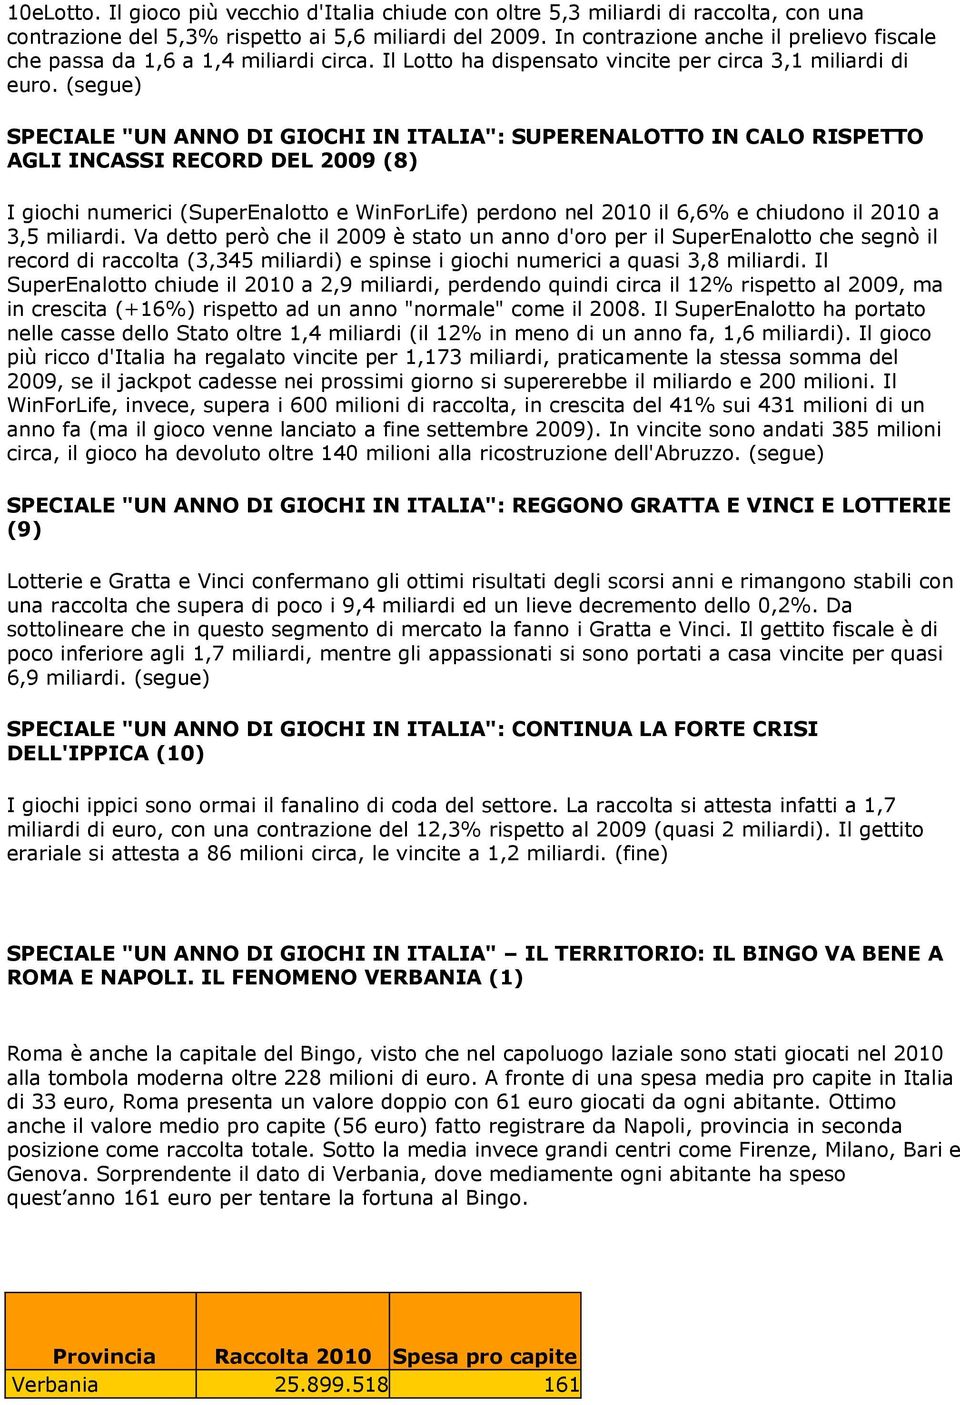 (segue) SPECIALE "UN ANNO DI GIOCHI IN ITALIA": SUPERENALOTTO IN CALO RISPETTO AGLI INCASSI RECORD DEL 2009 (8) I giochi numerici (SuperEnalotto e WinForLife) perdono nel 2010 il 6,6% e chiudono il